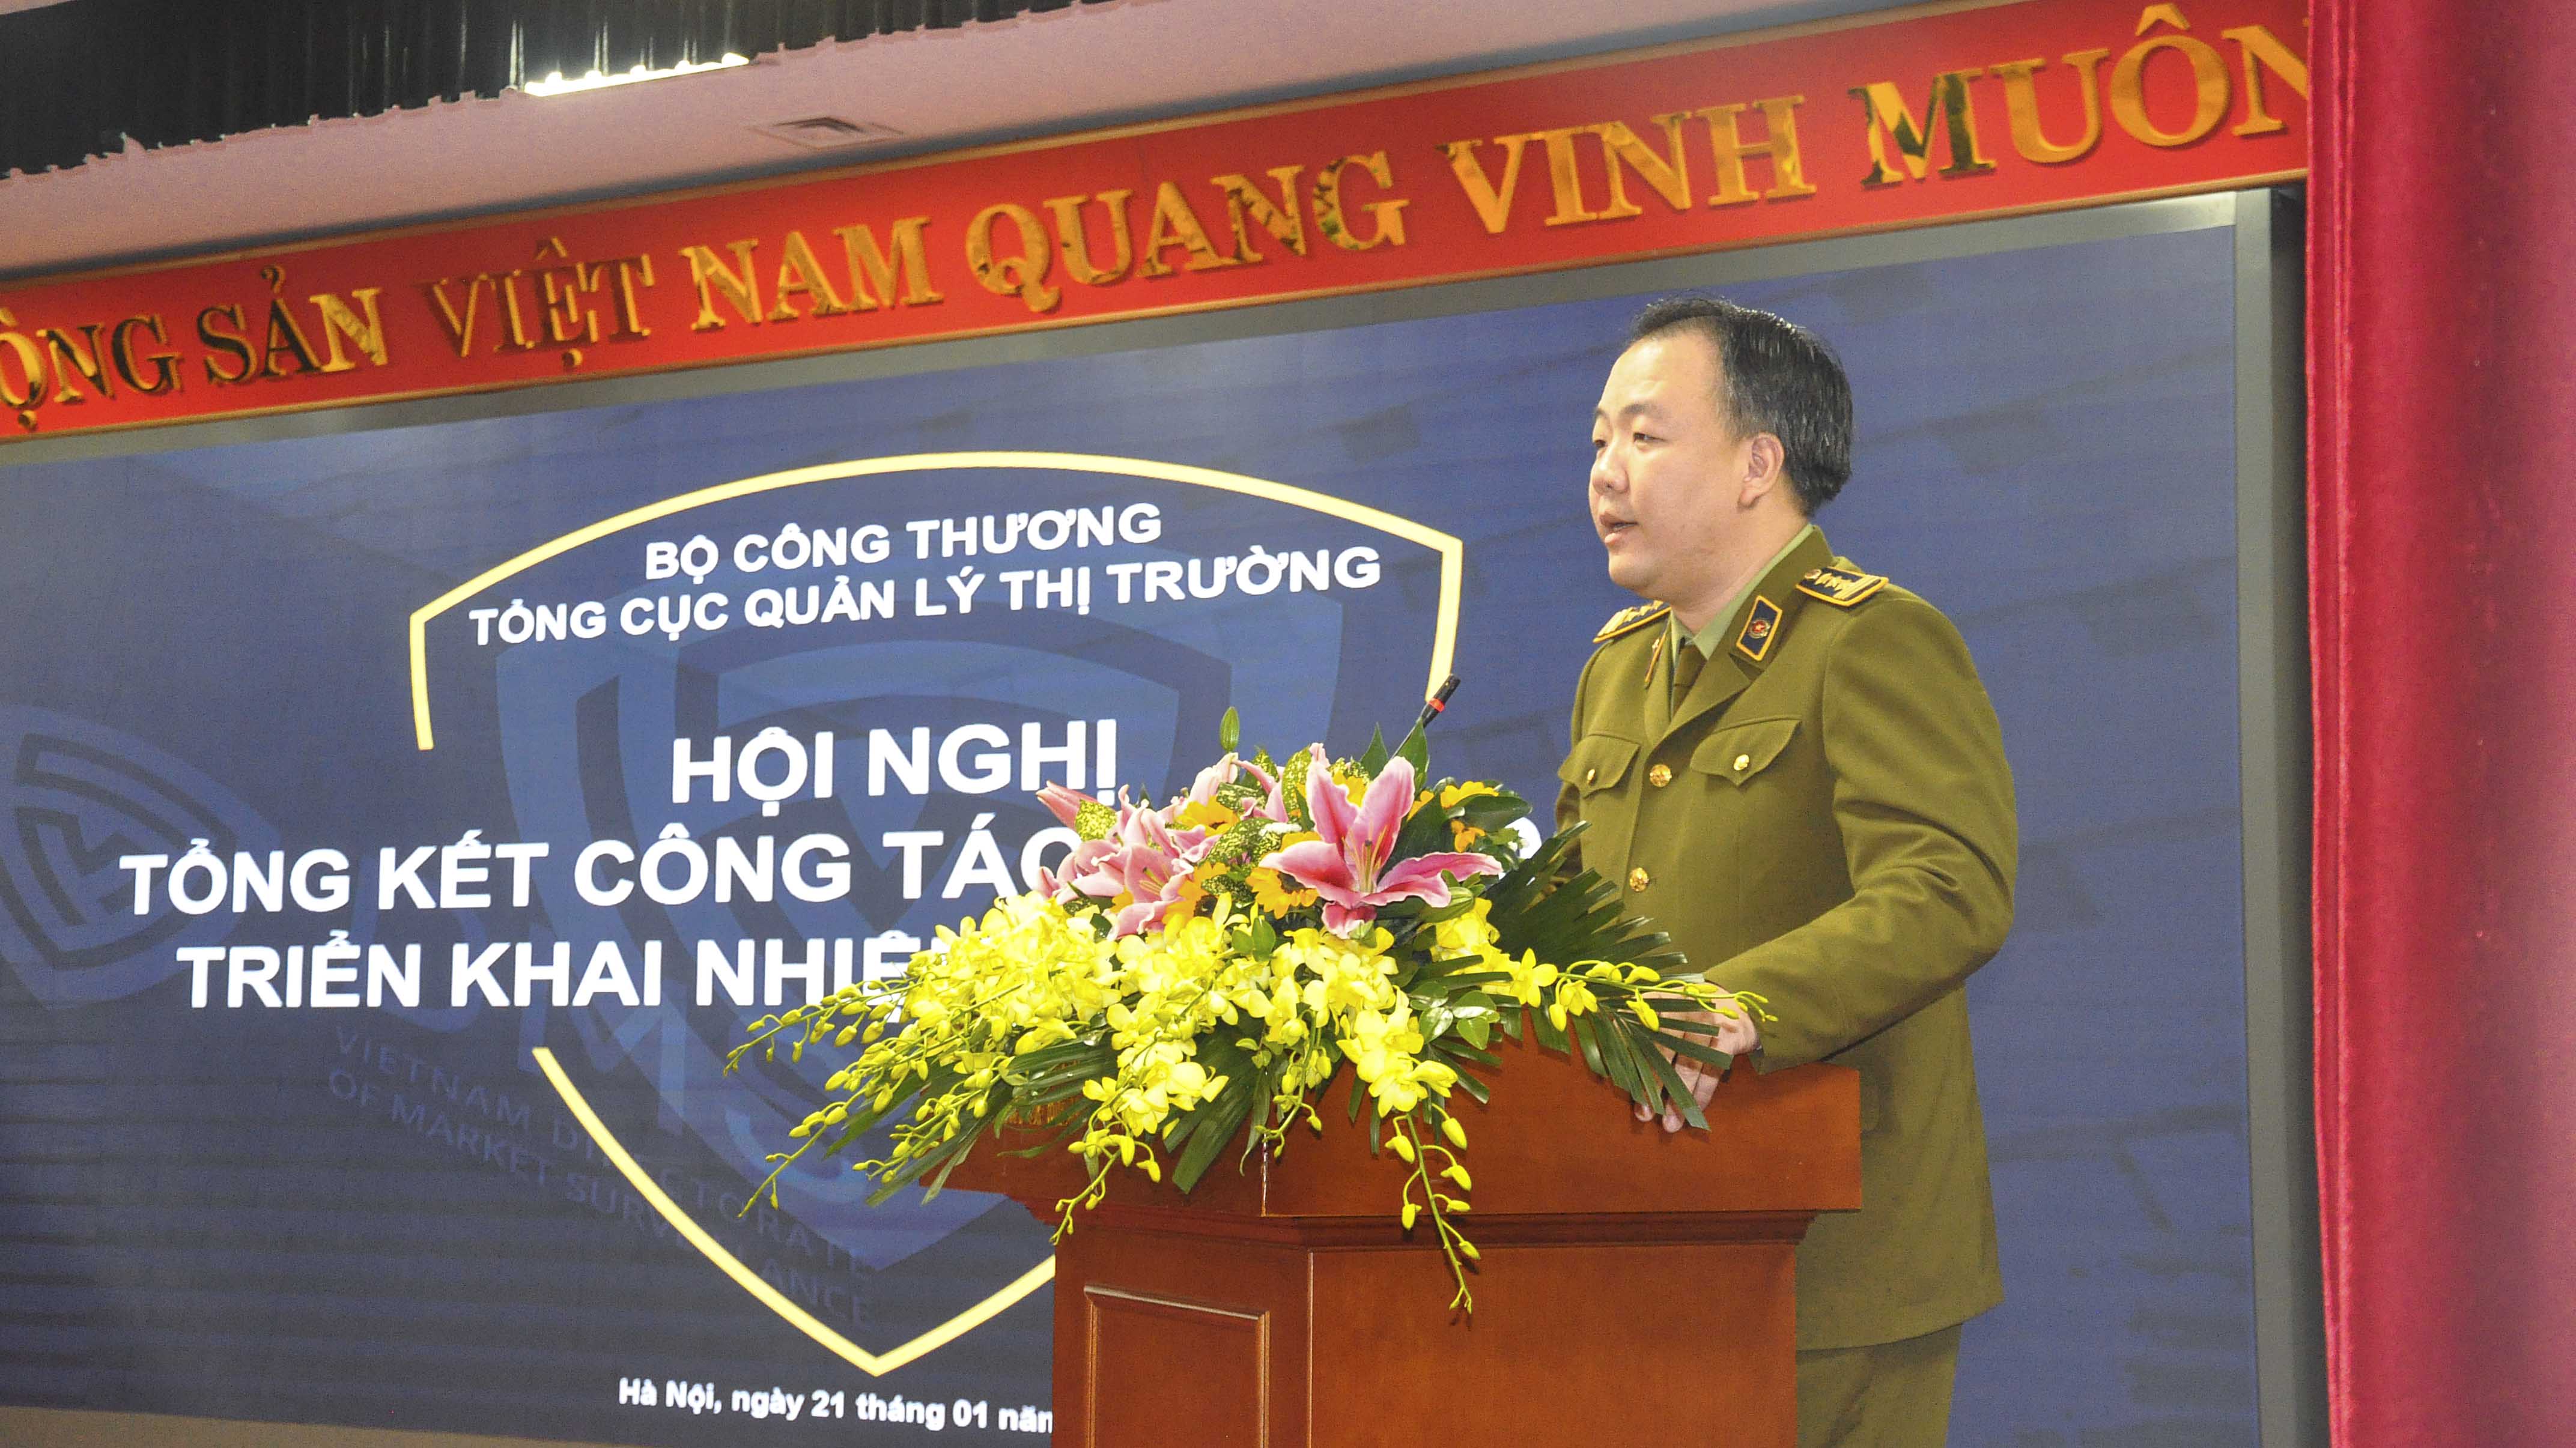 Trần Hữu Linh